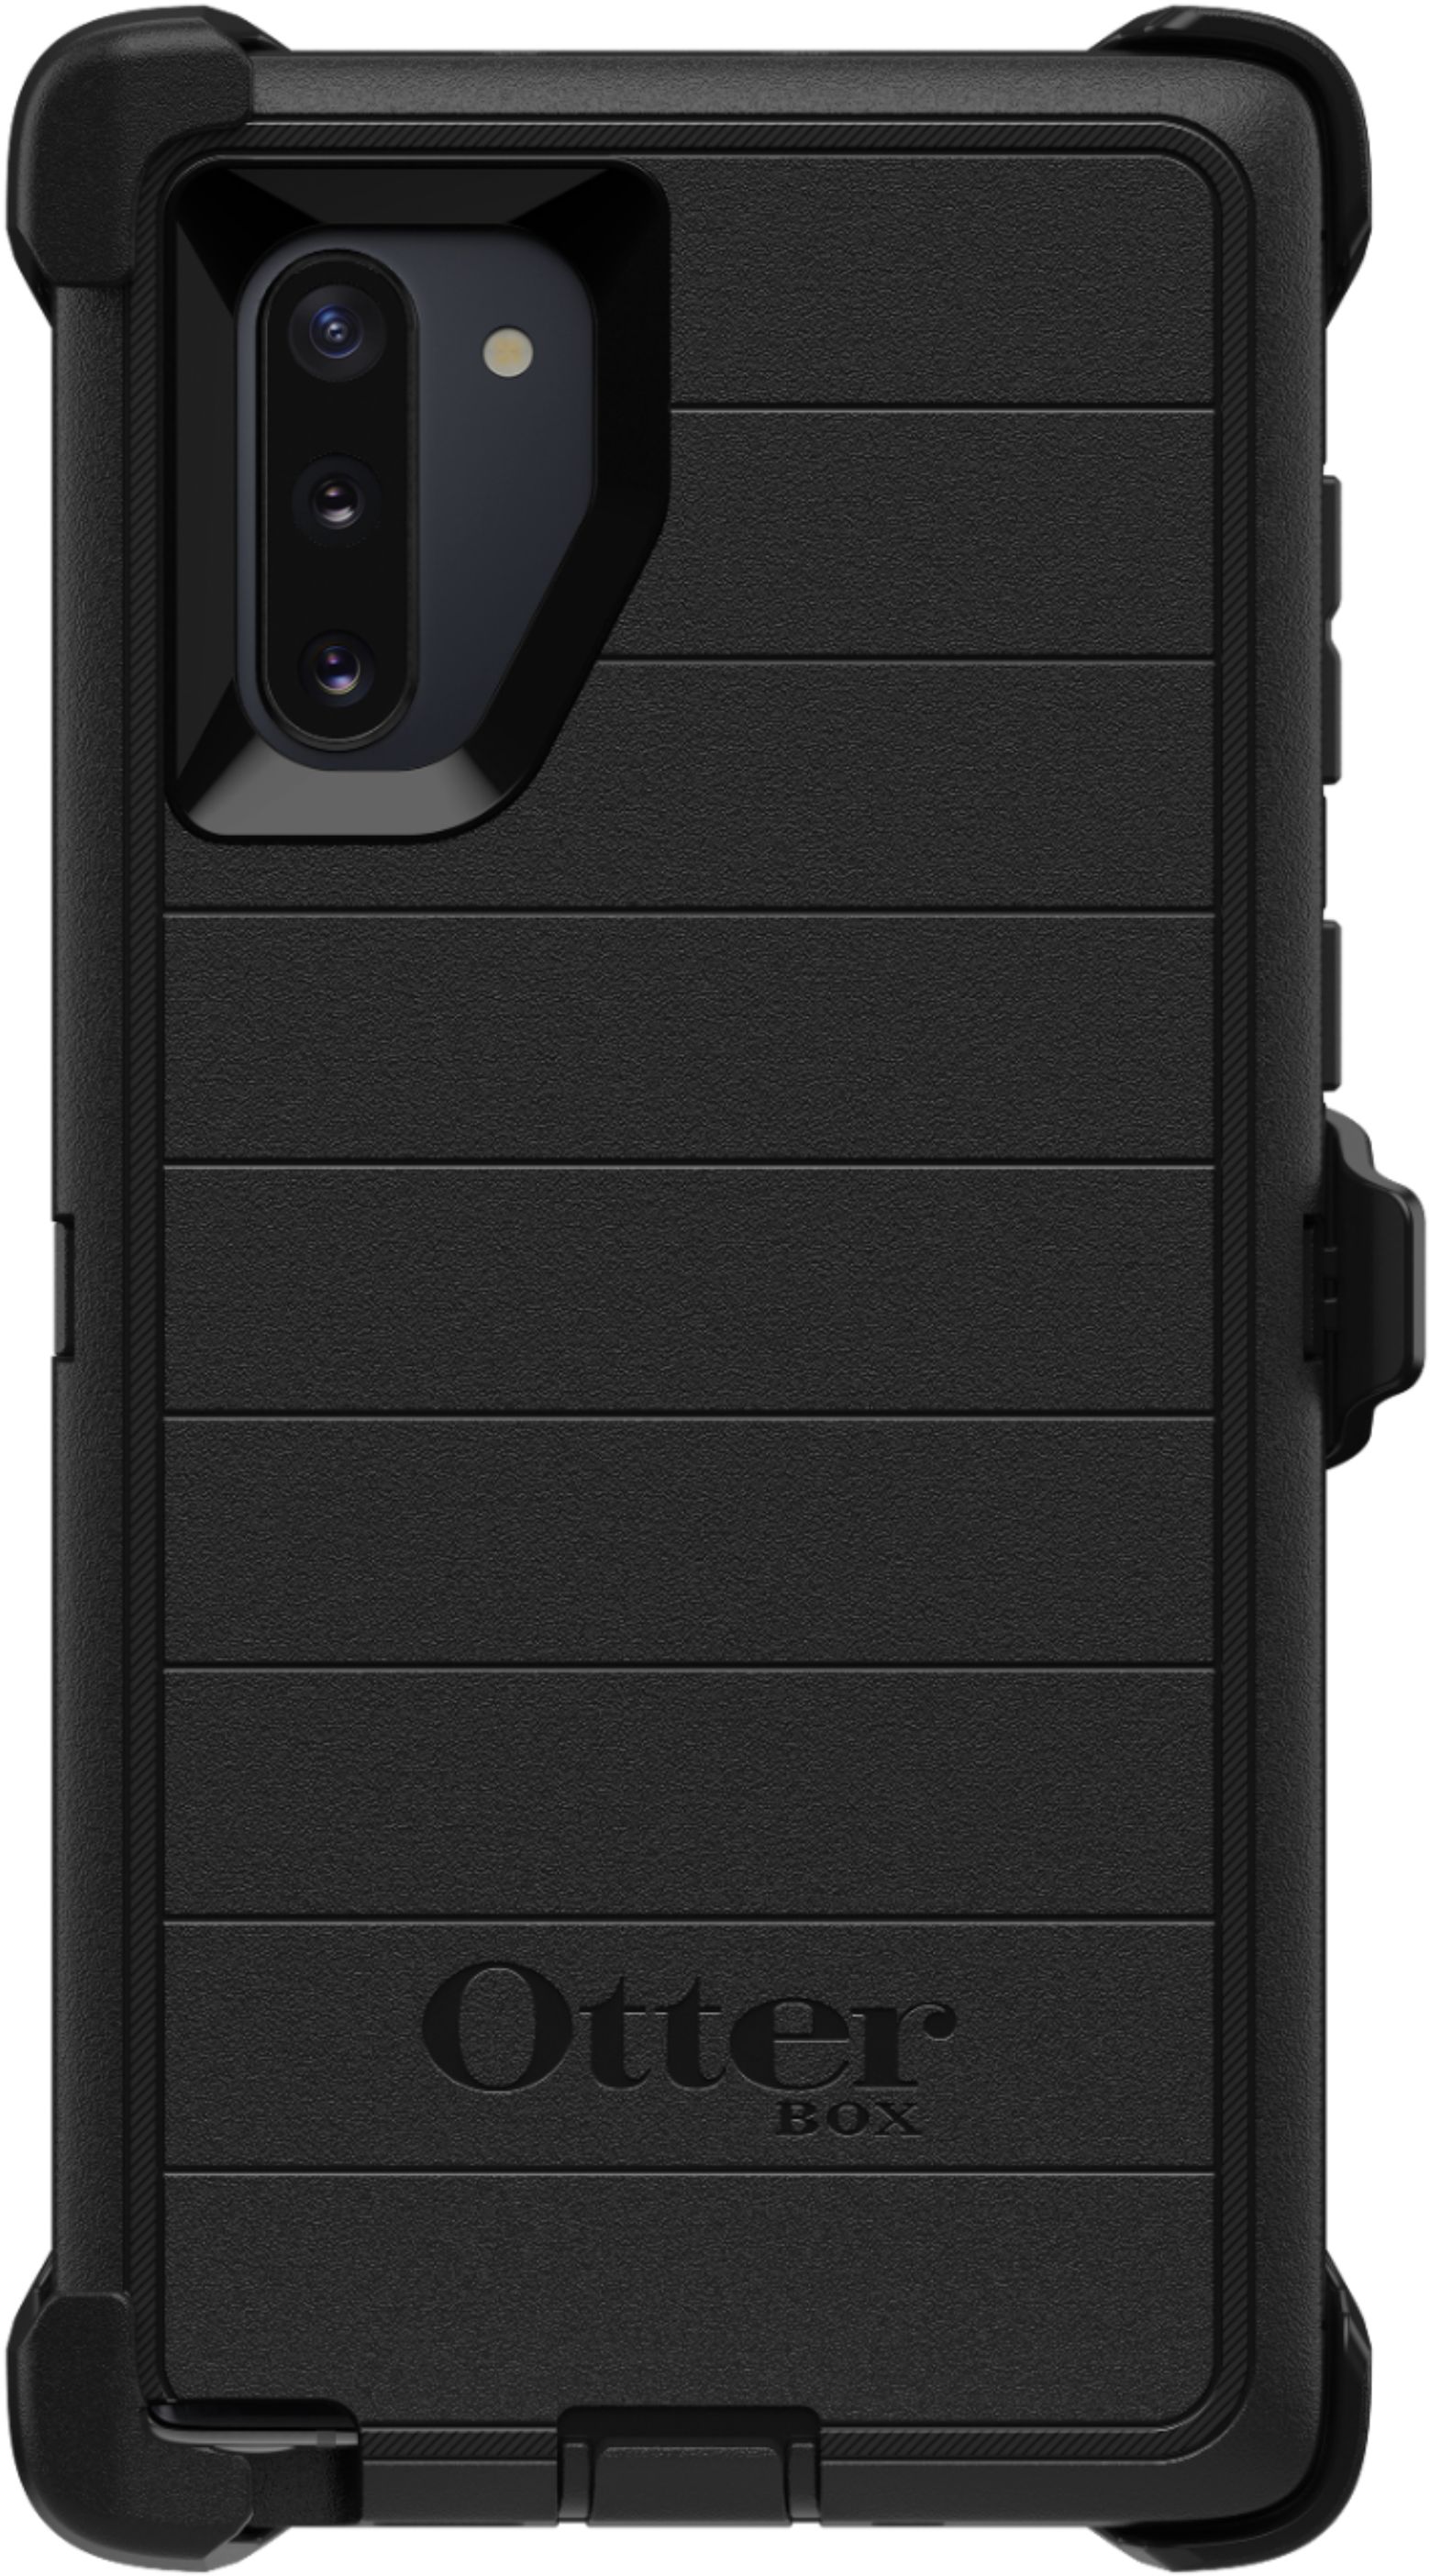 Concurrenten winkel Verbeteren OtterBox Defender Series Pro Case for Samsung Galaxy Note10 Black 77-63637  - Best Buy